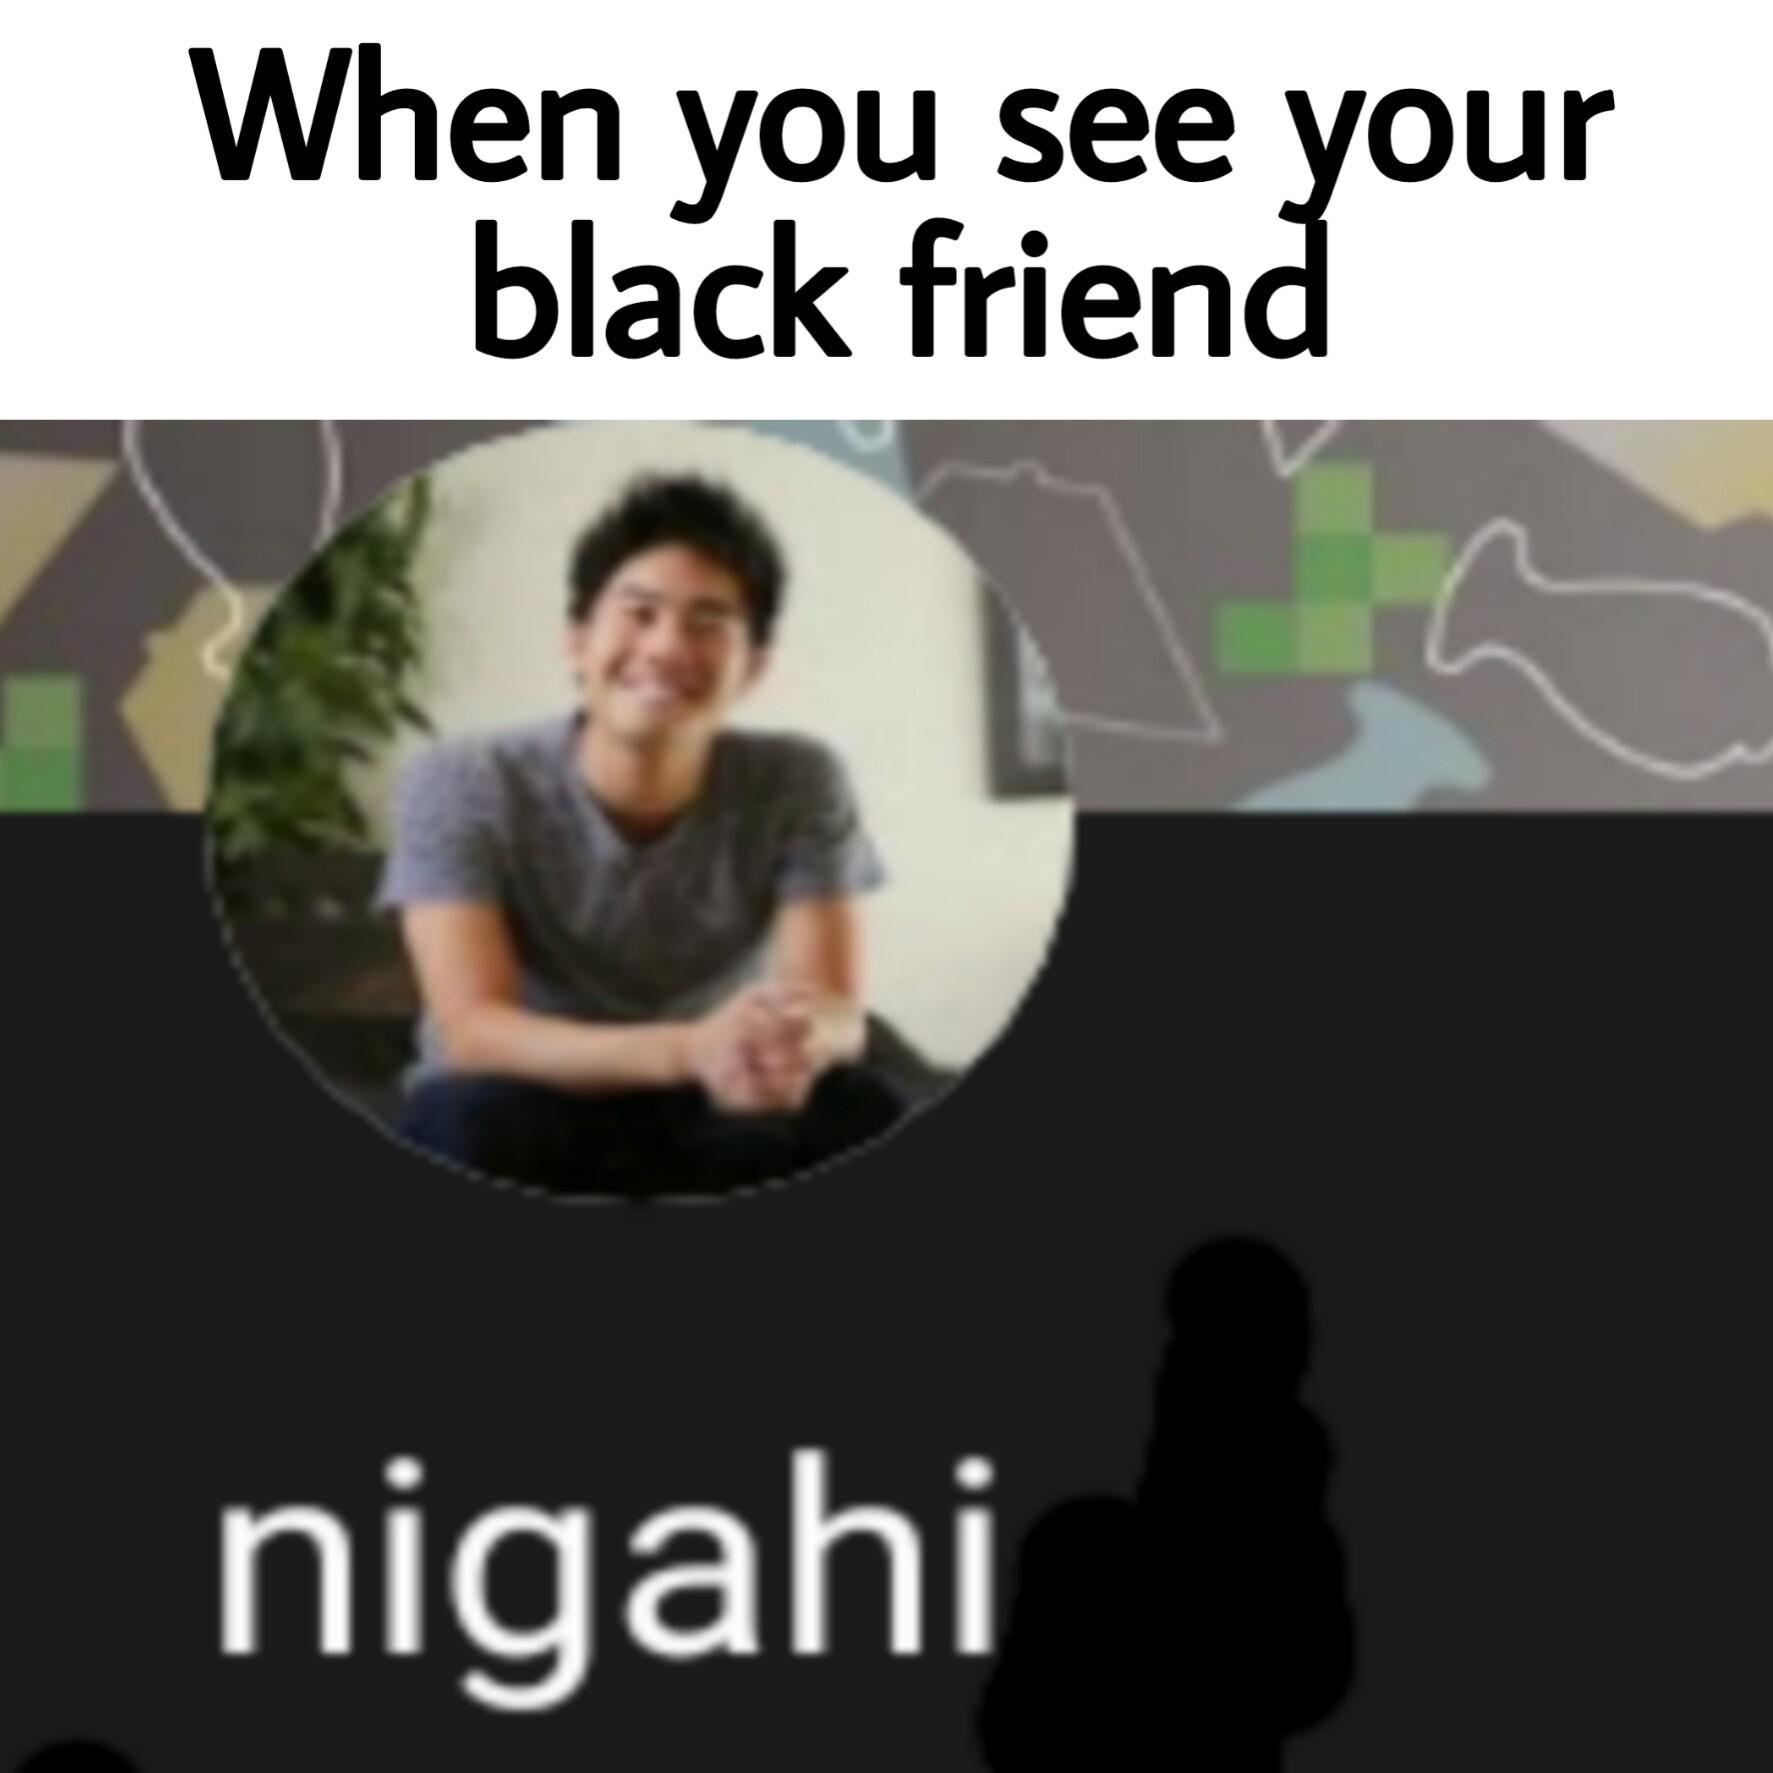 Nigahi.png - meme